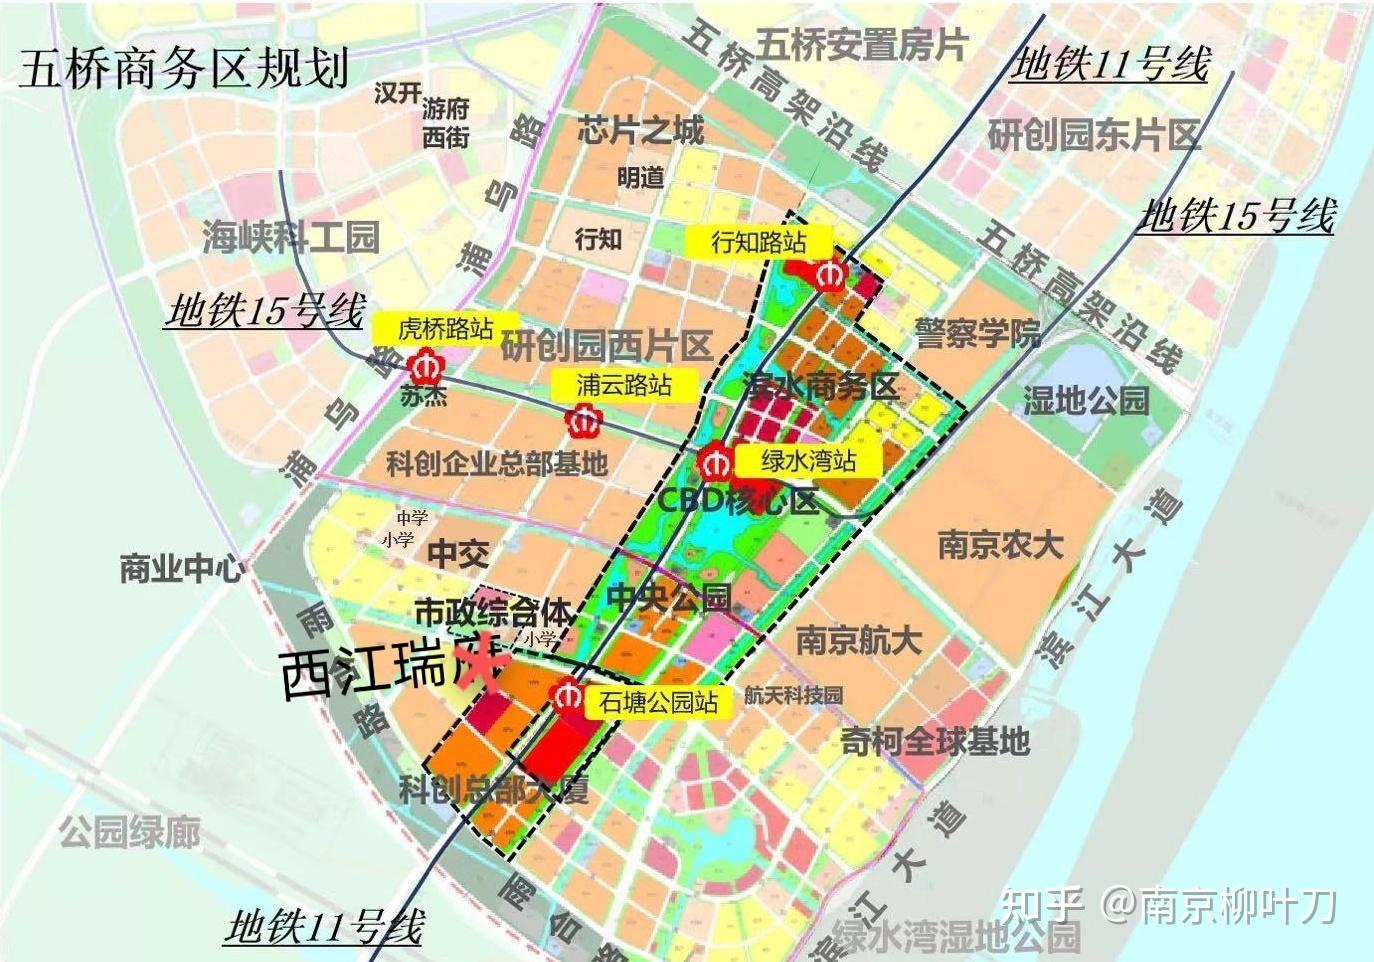 南京买房栖霞山欢乐谷片区真的有中介和销售说的发展前景那么好吗